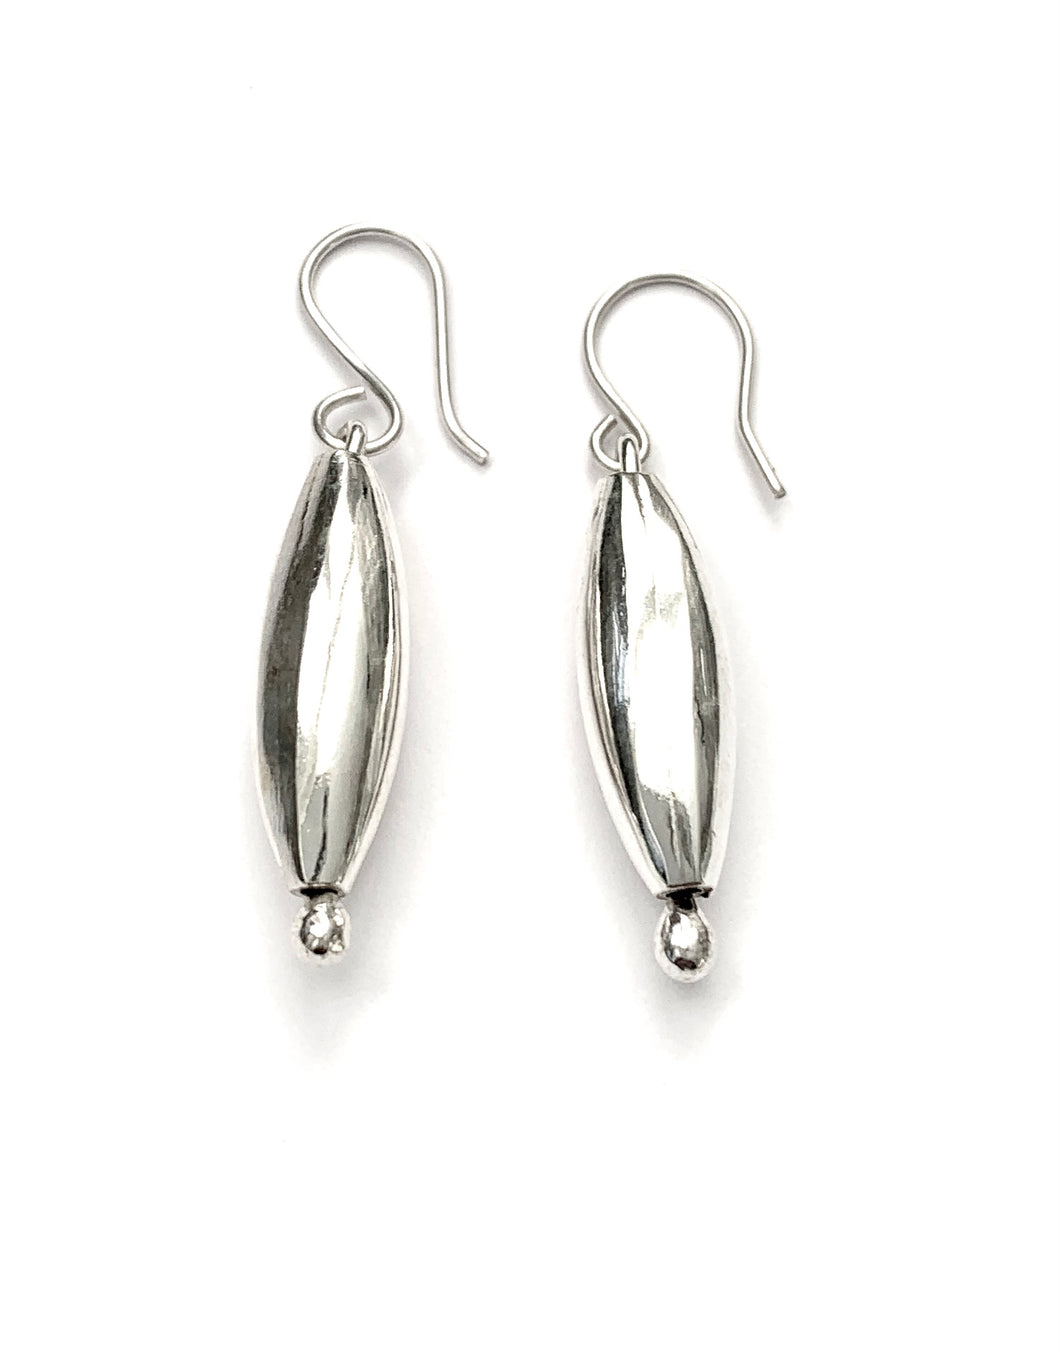 Silver Drop Earrings - OKA6036